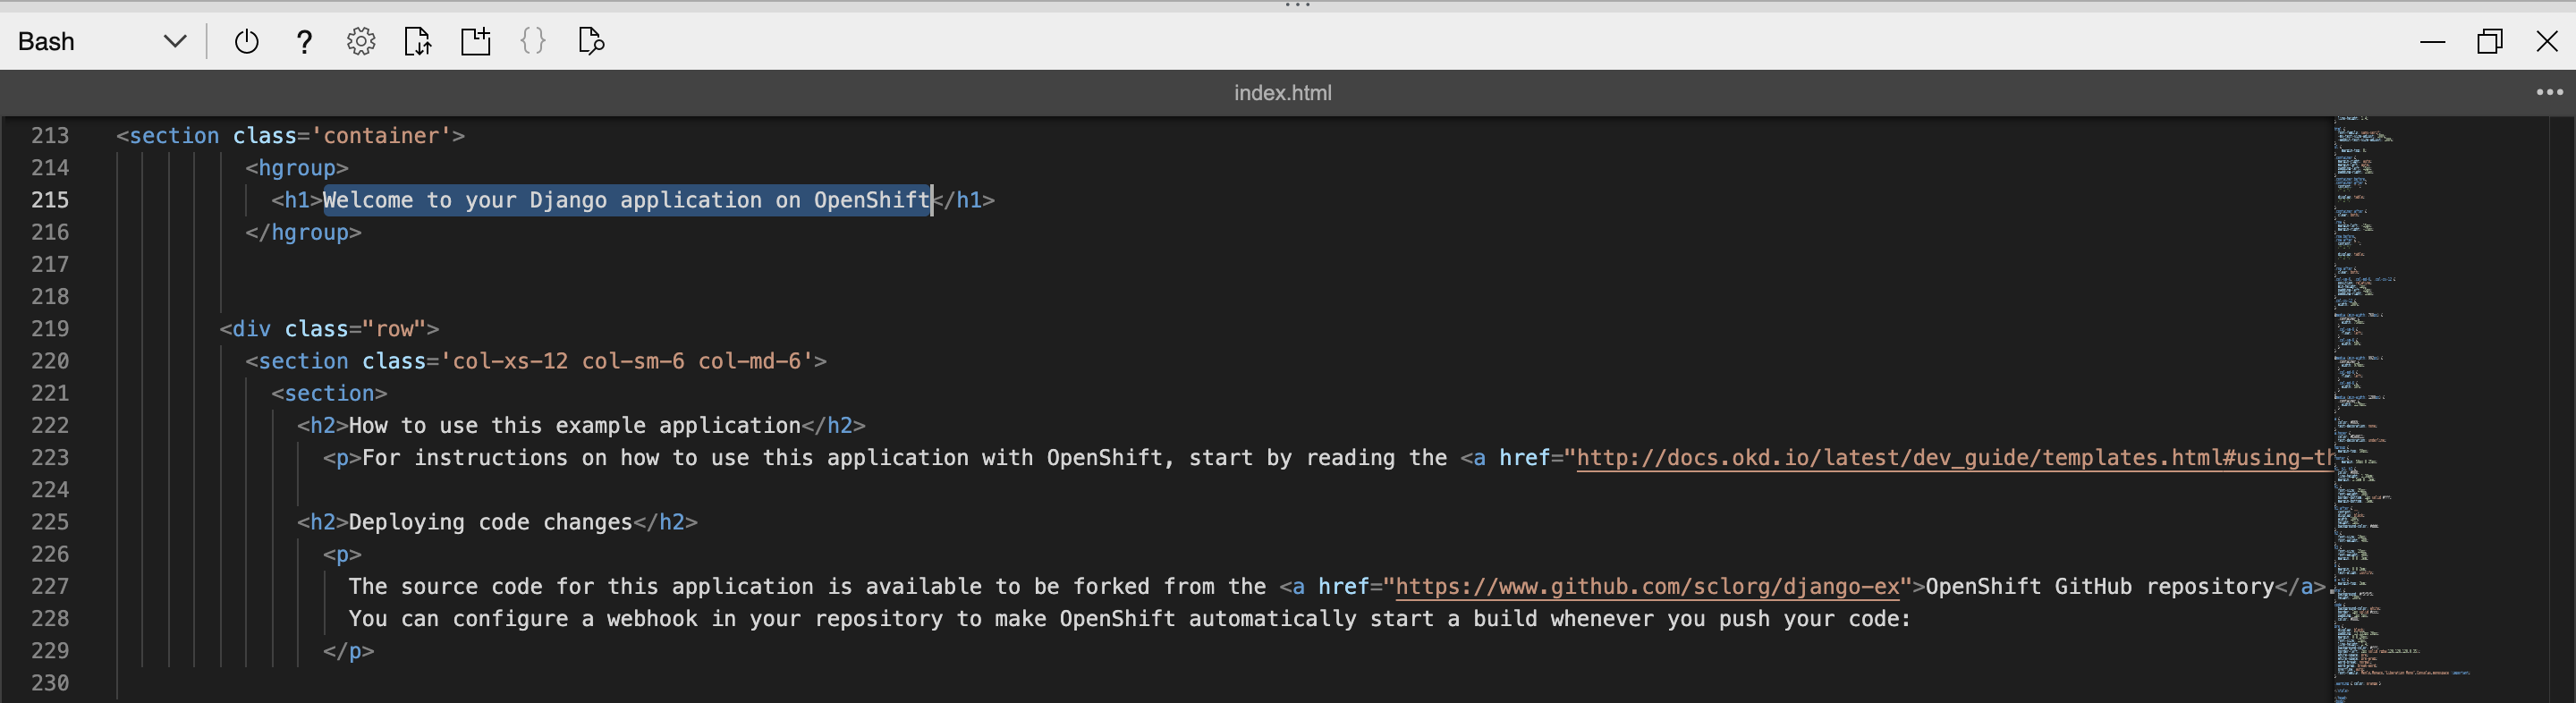 Git からの Azure Red Hat OpenShift プロジェクト - Azure Cloud Shell エディターでのアプリケーションの編集